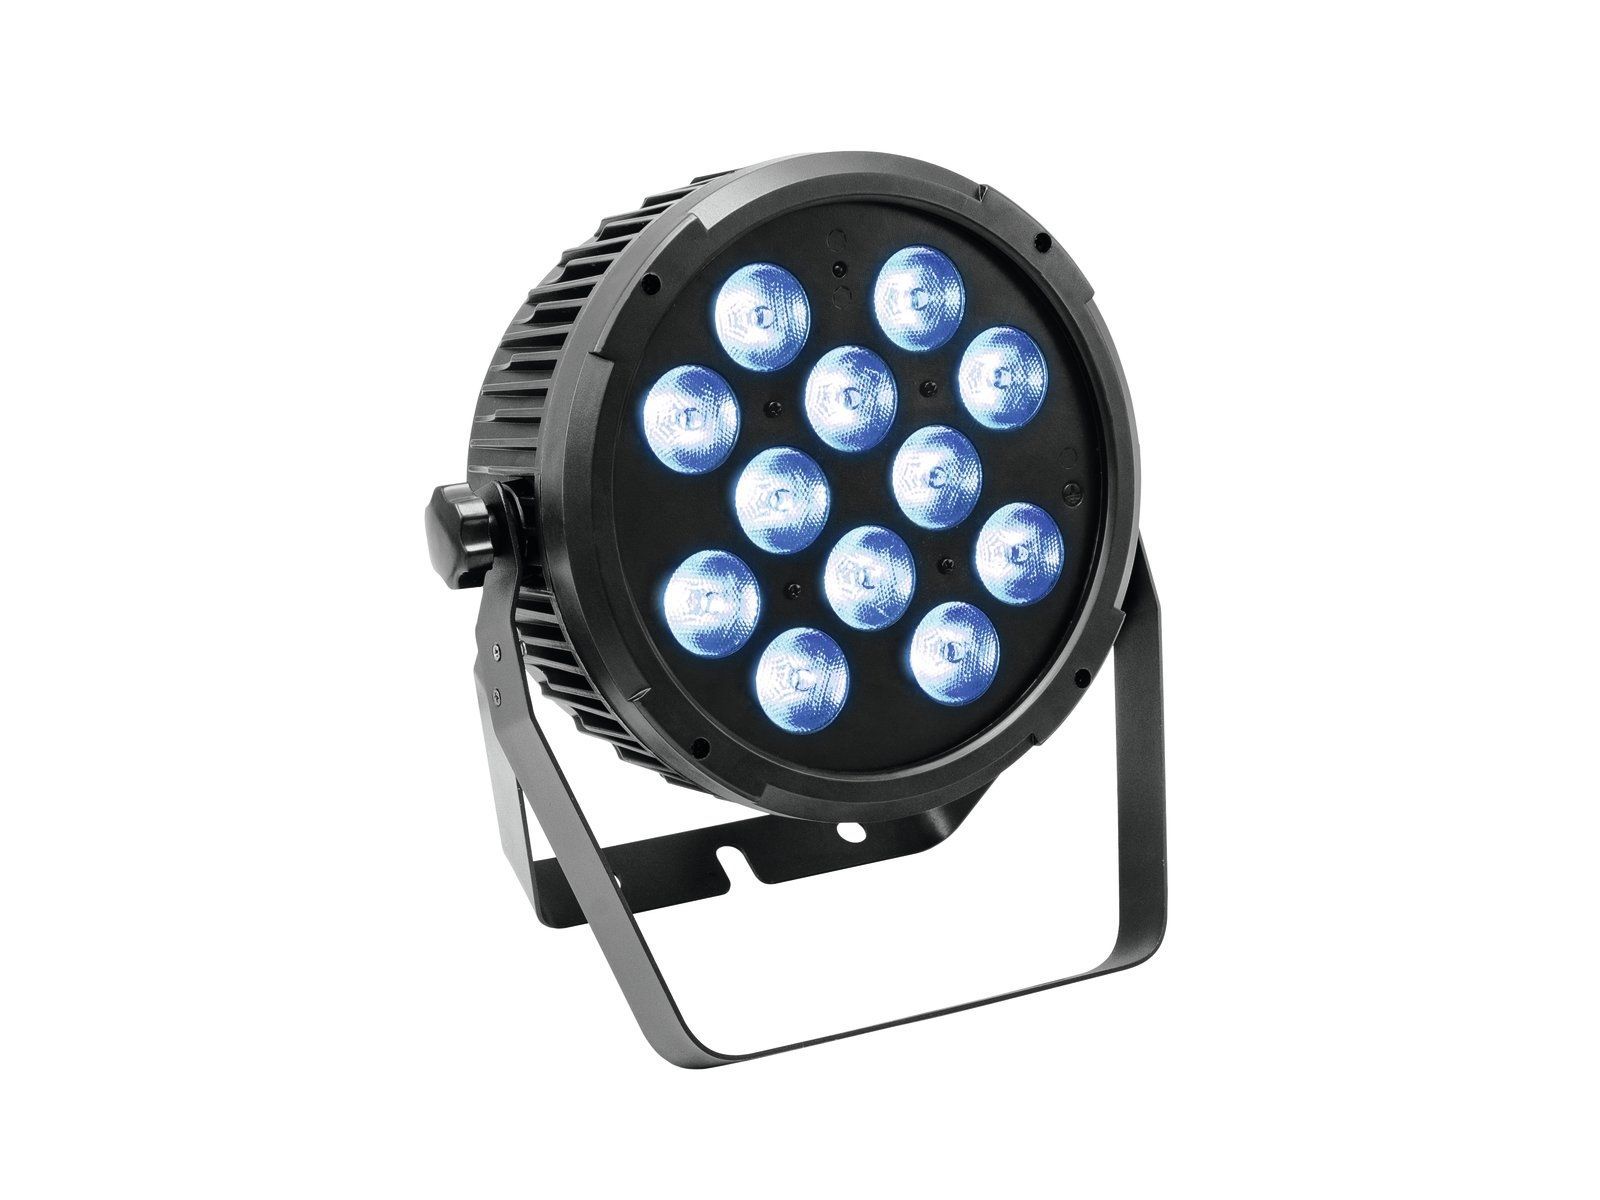 EUROLITE LED SLS 12 HCL MK2 F flacher LED Scheinwerfer mit 12 x 10 W RGBW UV  - Onlineshop Musikhaus Markstein